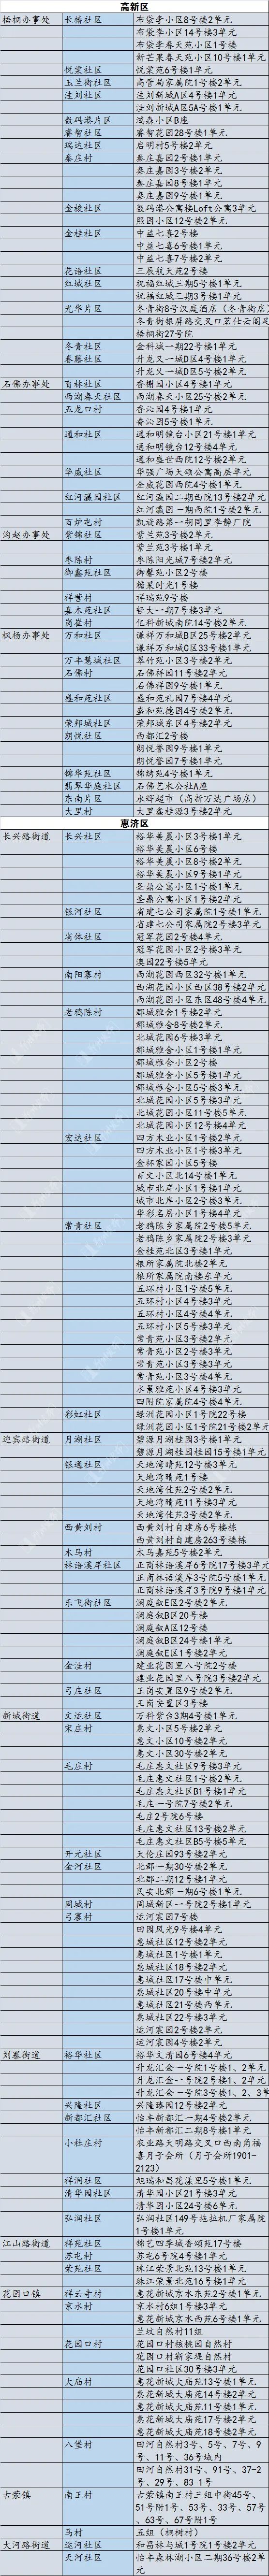 郑州市公布现有高风险区名单！其他区域恢复正常生产生活秩序